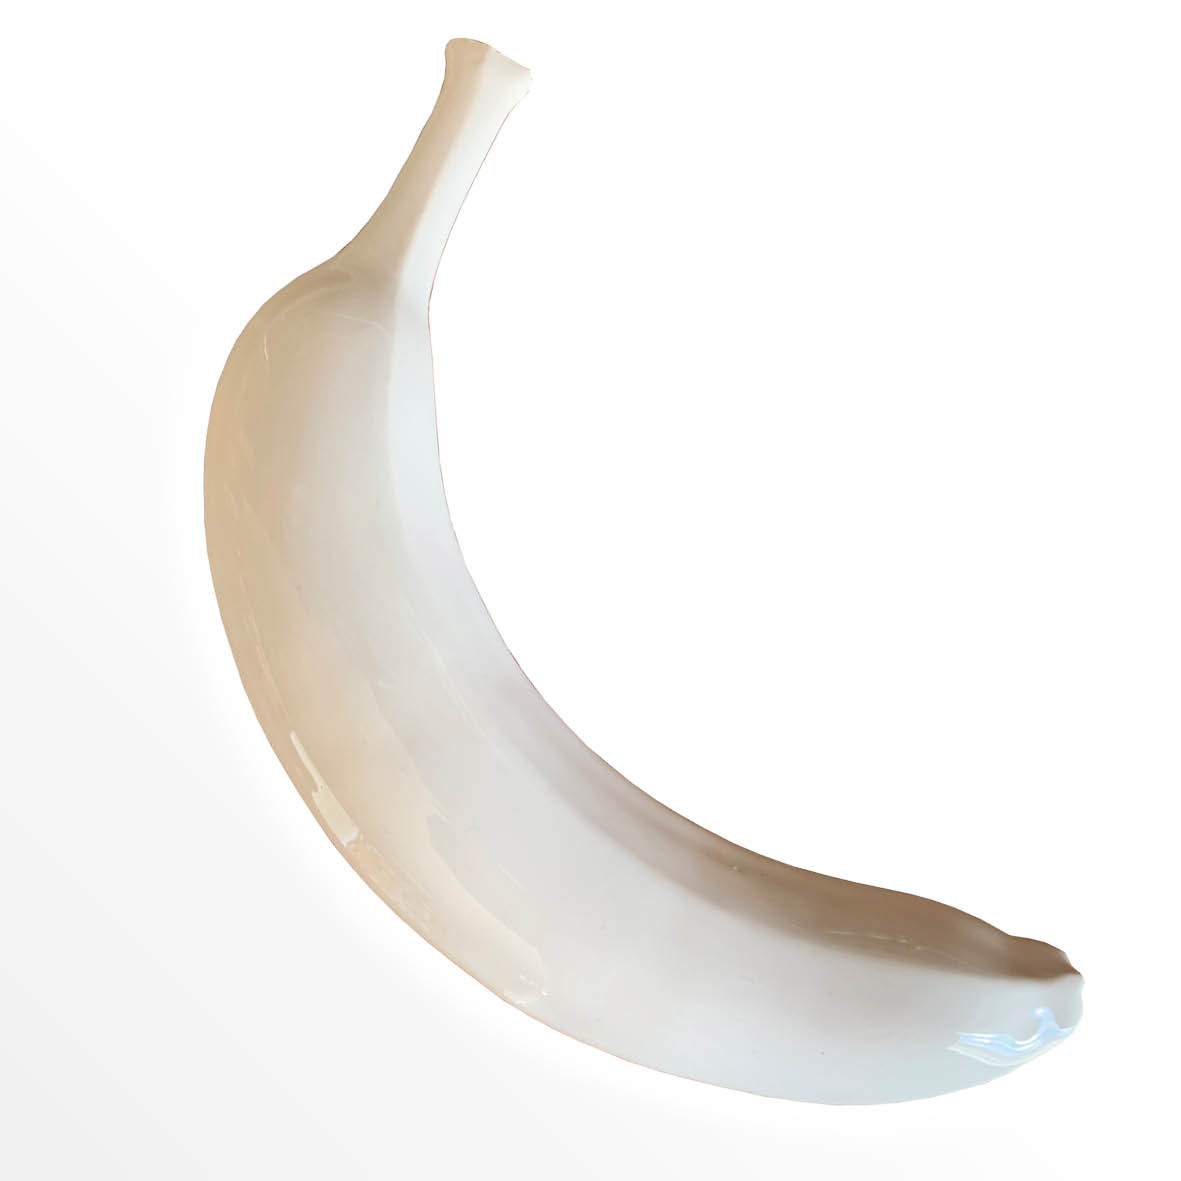 Ceramic White Banana - Plain